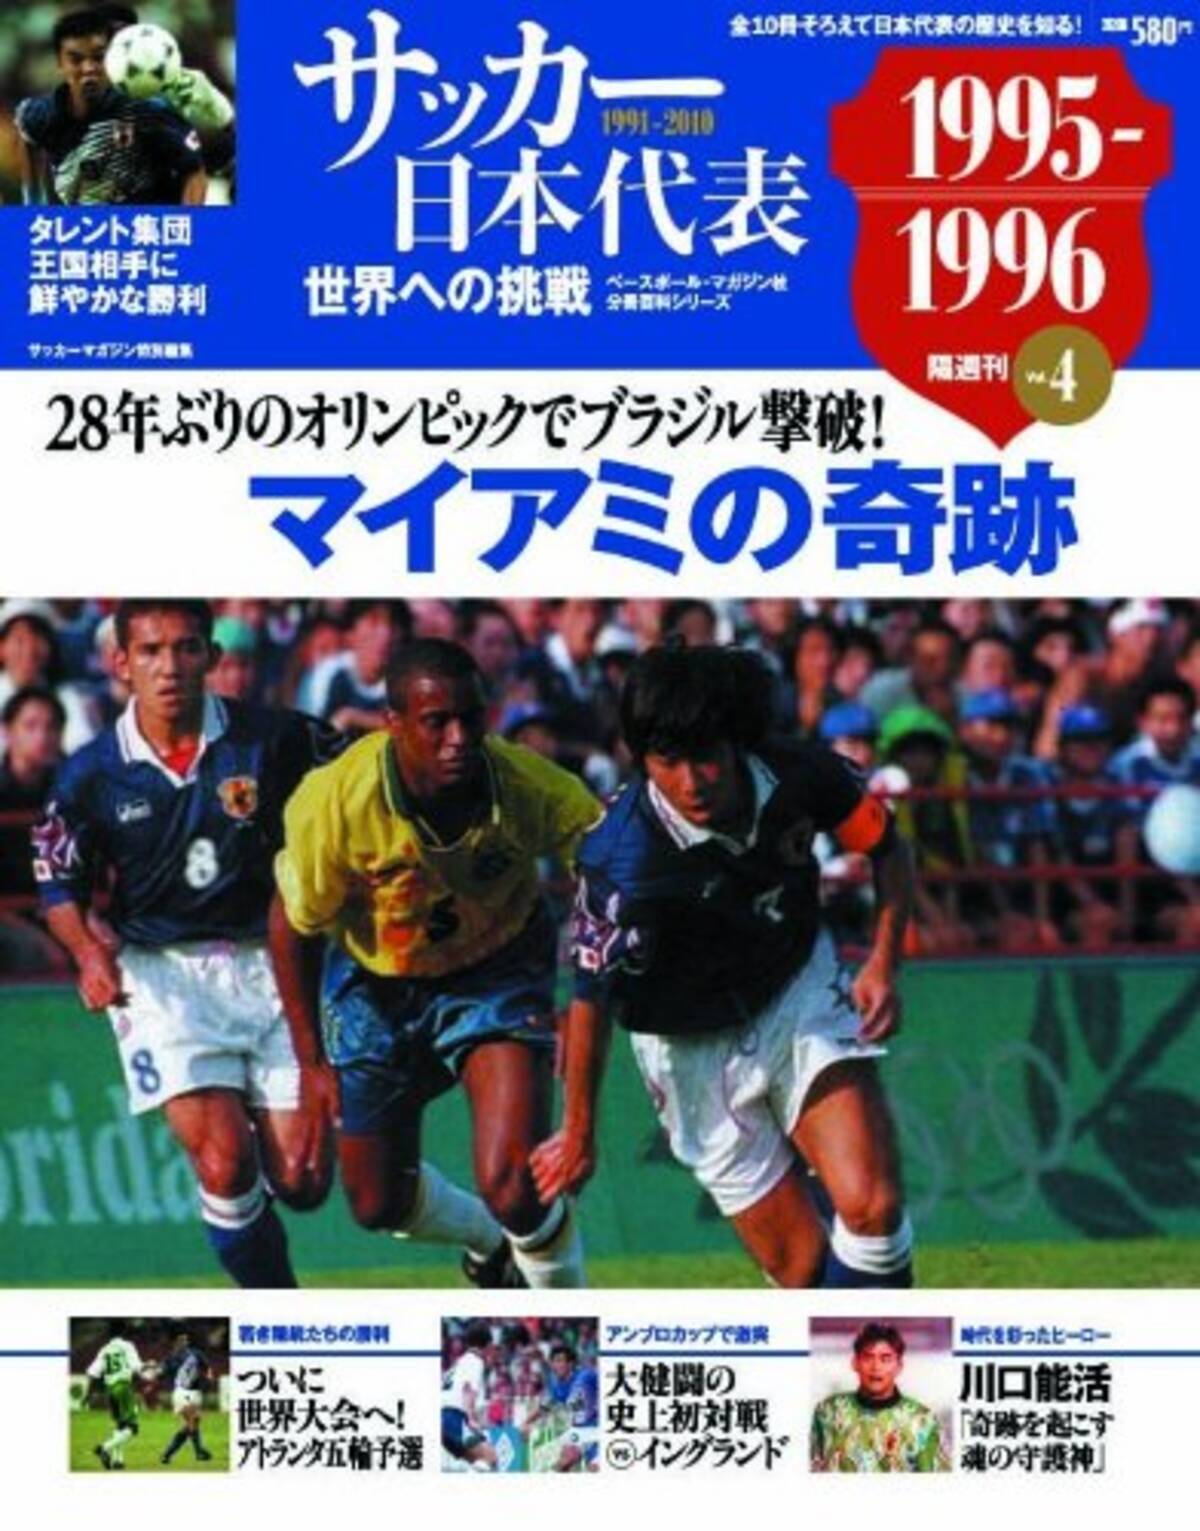 サッカー日本代表がブラジルに勝利 マイアミの奇跡 を振りかえる エキサイトニュース